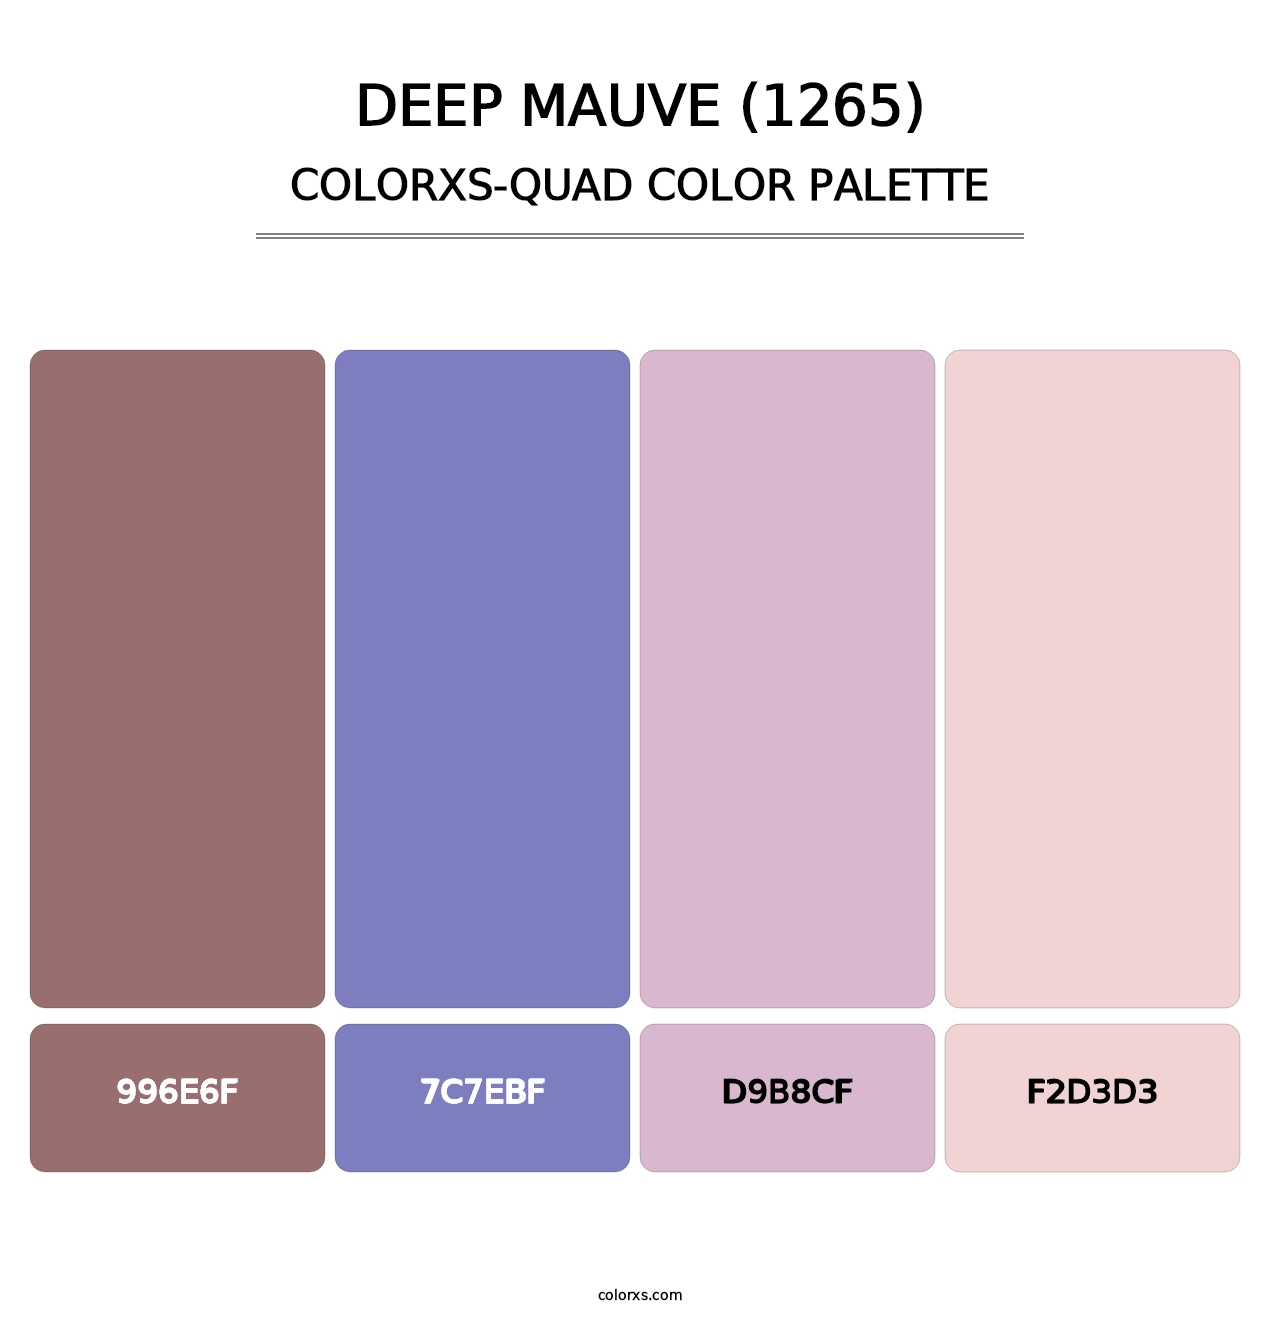 Deep Mauve (1265) - Colorxs Quad Palette